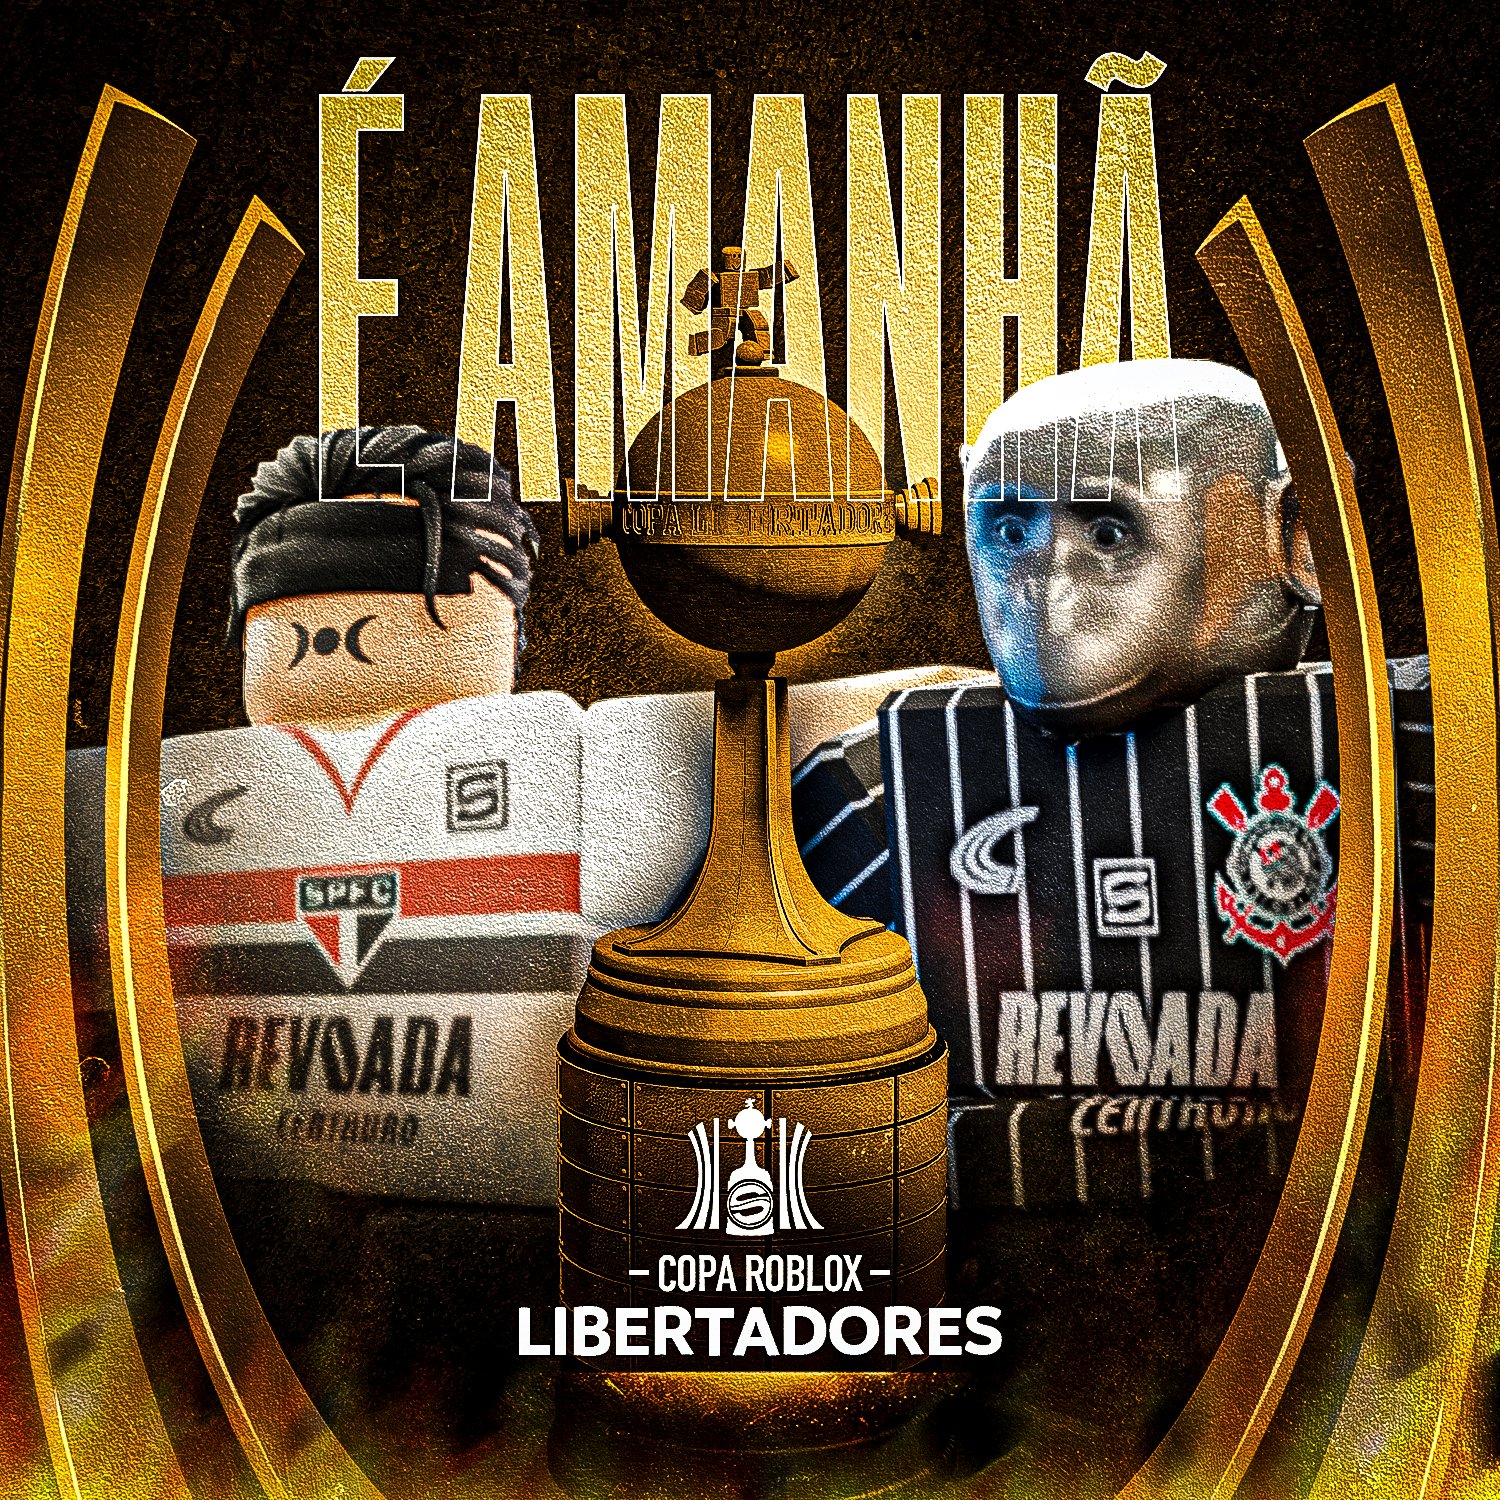 O Corinthians venceu o são paulo #roblox #robloxedit #thiagotavaresm